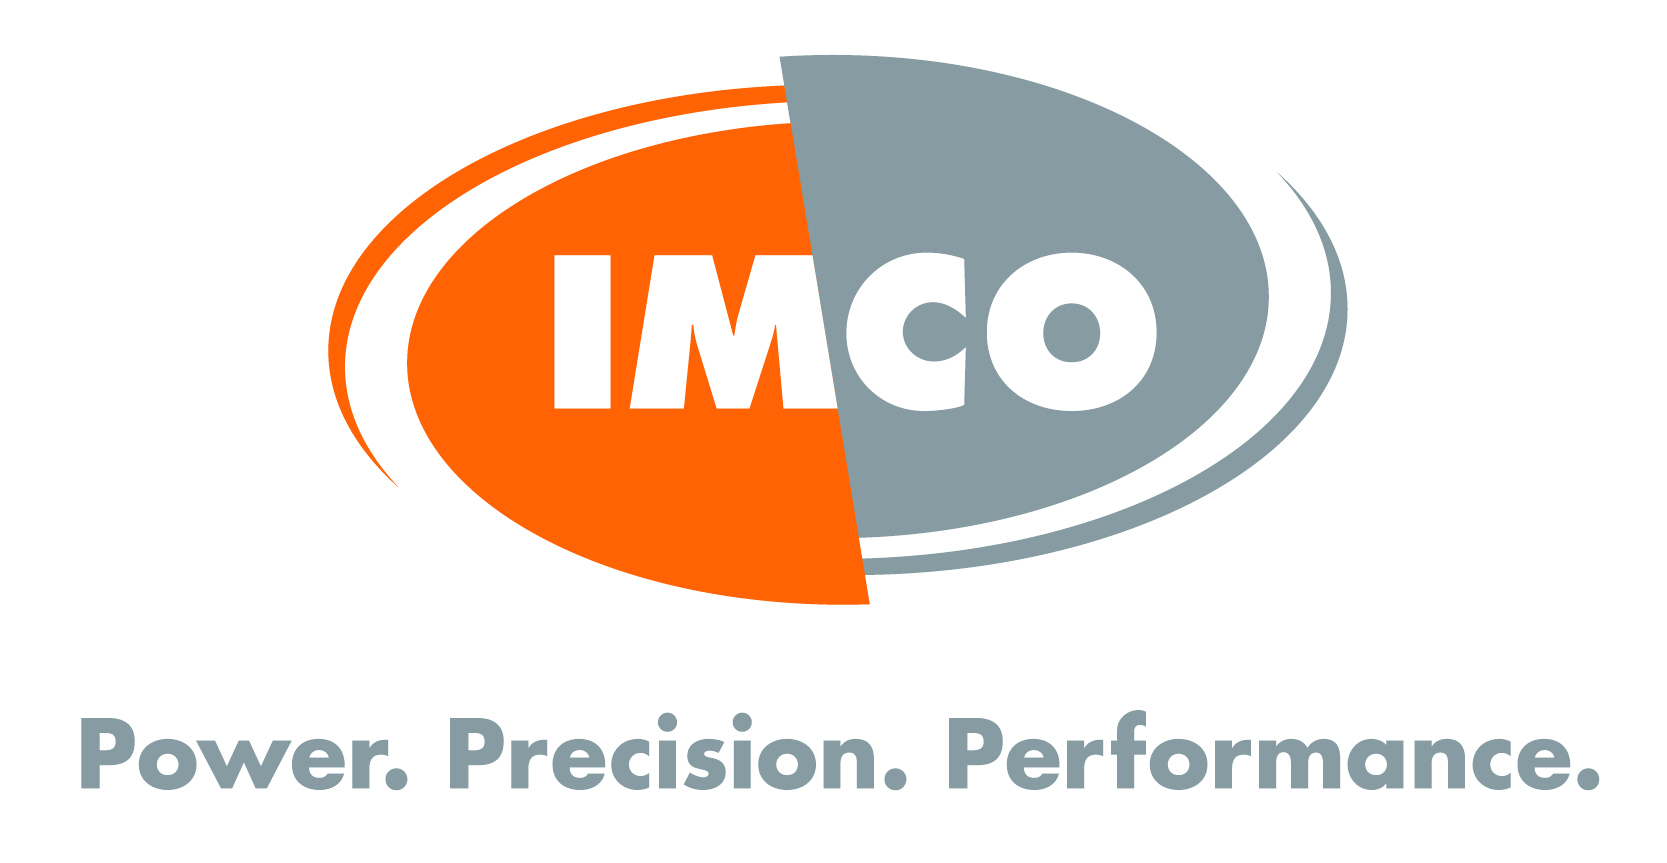 IMCO Carbide Tool Inc.